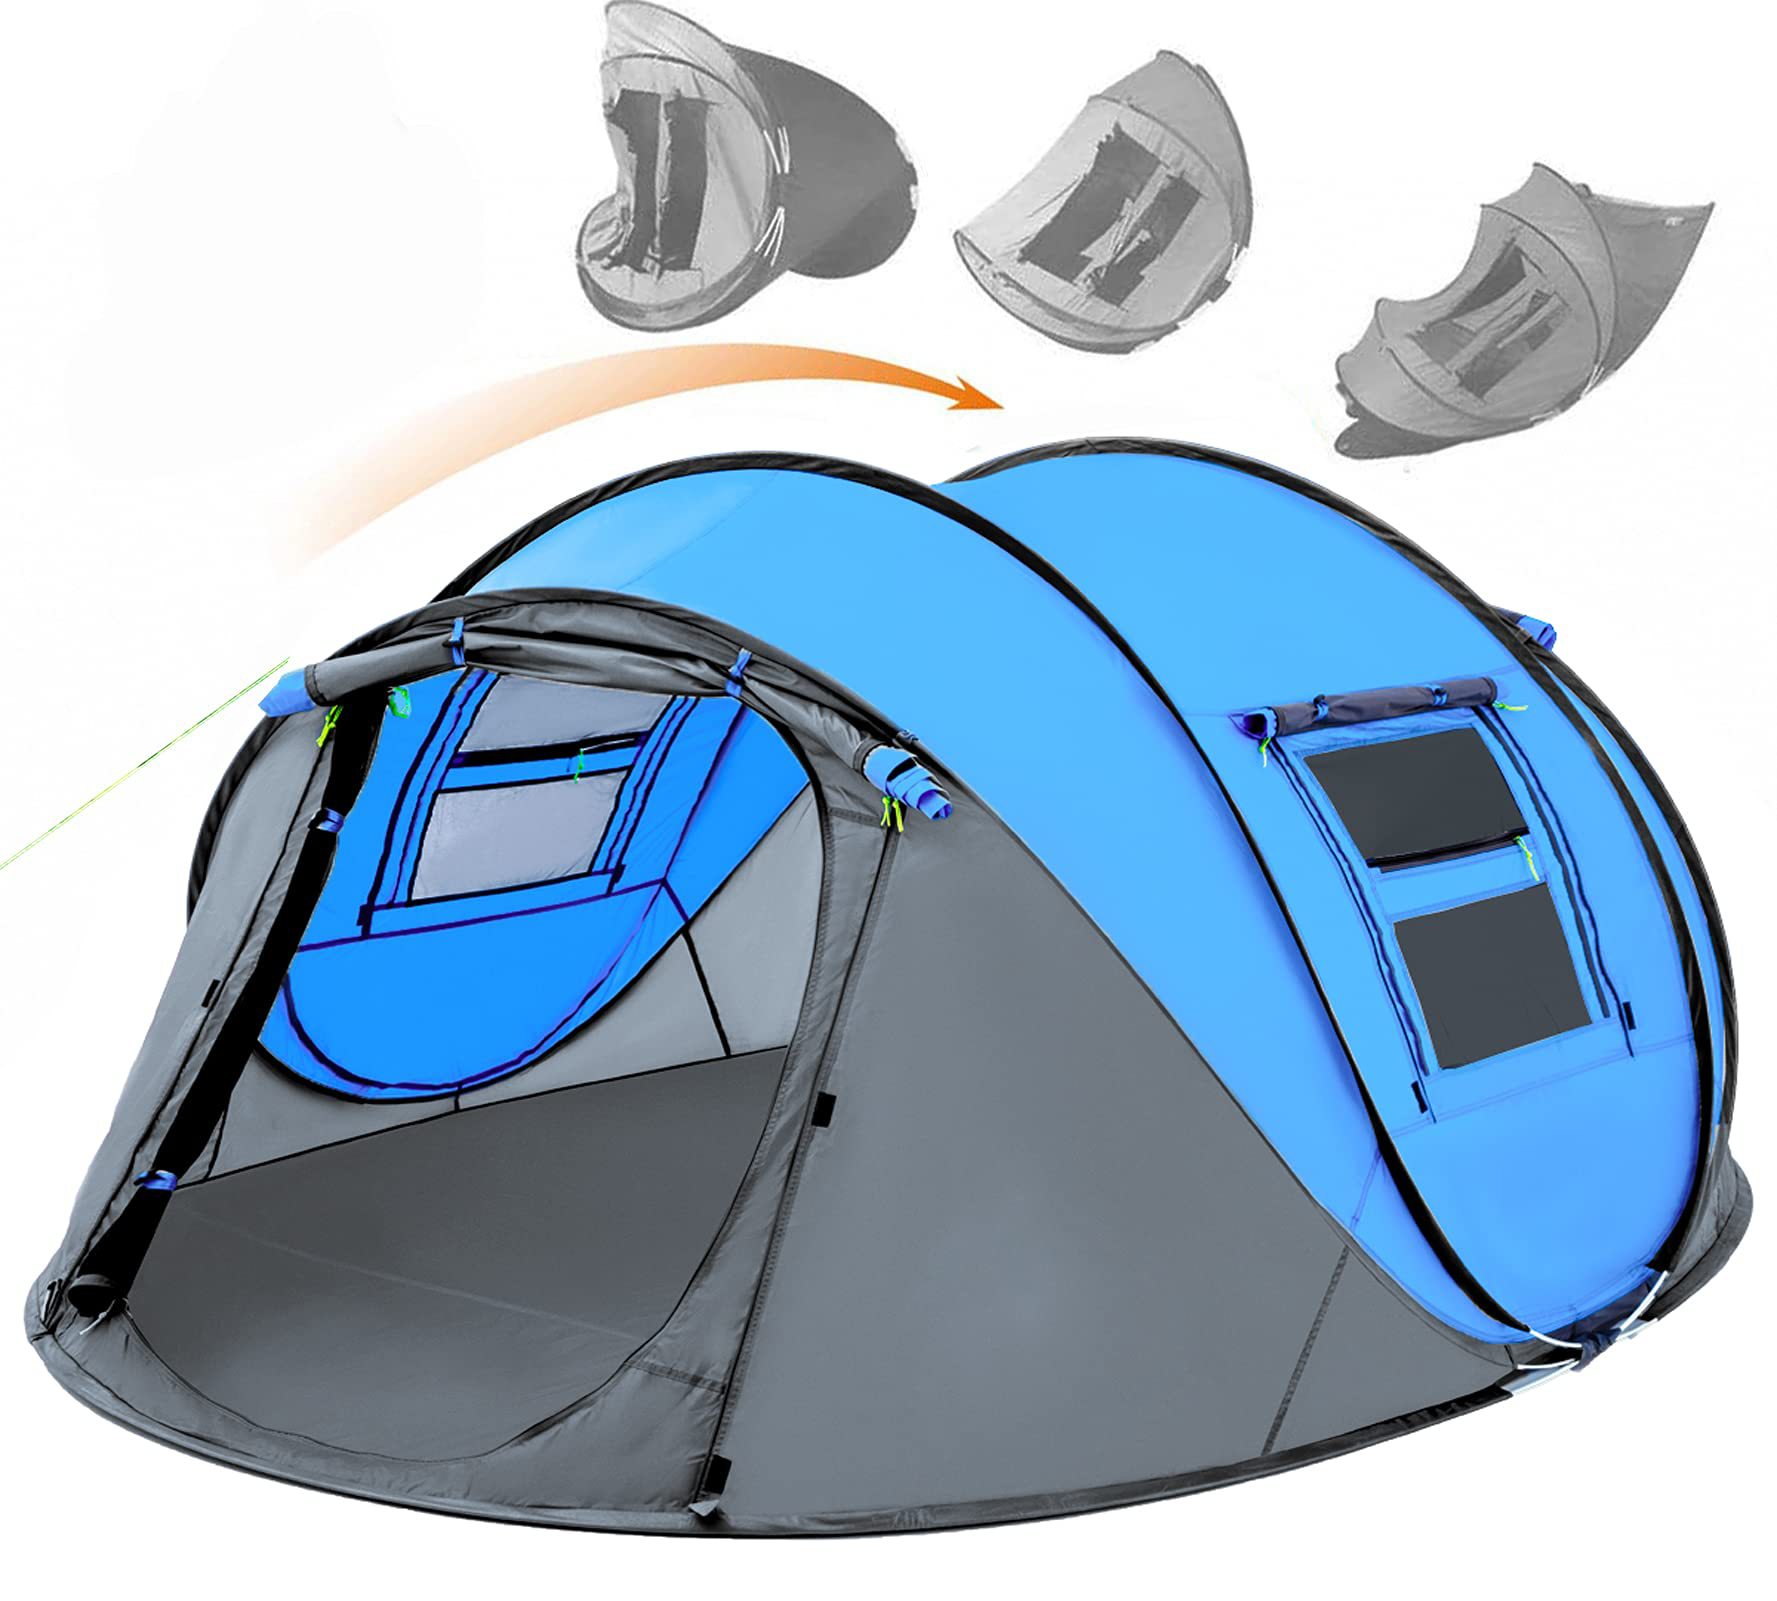 Tente Pop Up facile pour 4 personnes, configuration automatique étanche, 2 portes, tentes familiales instantanées pour le camping, la randonnée et les voyages